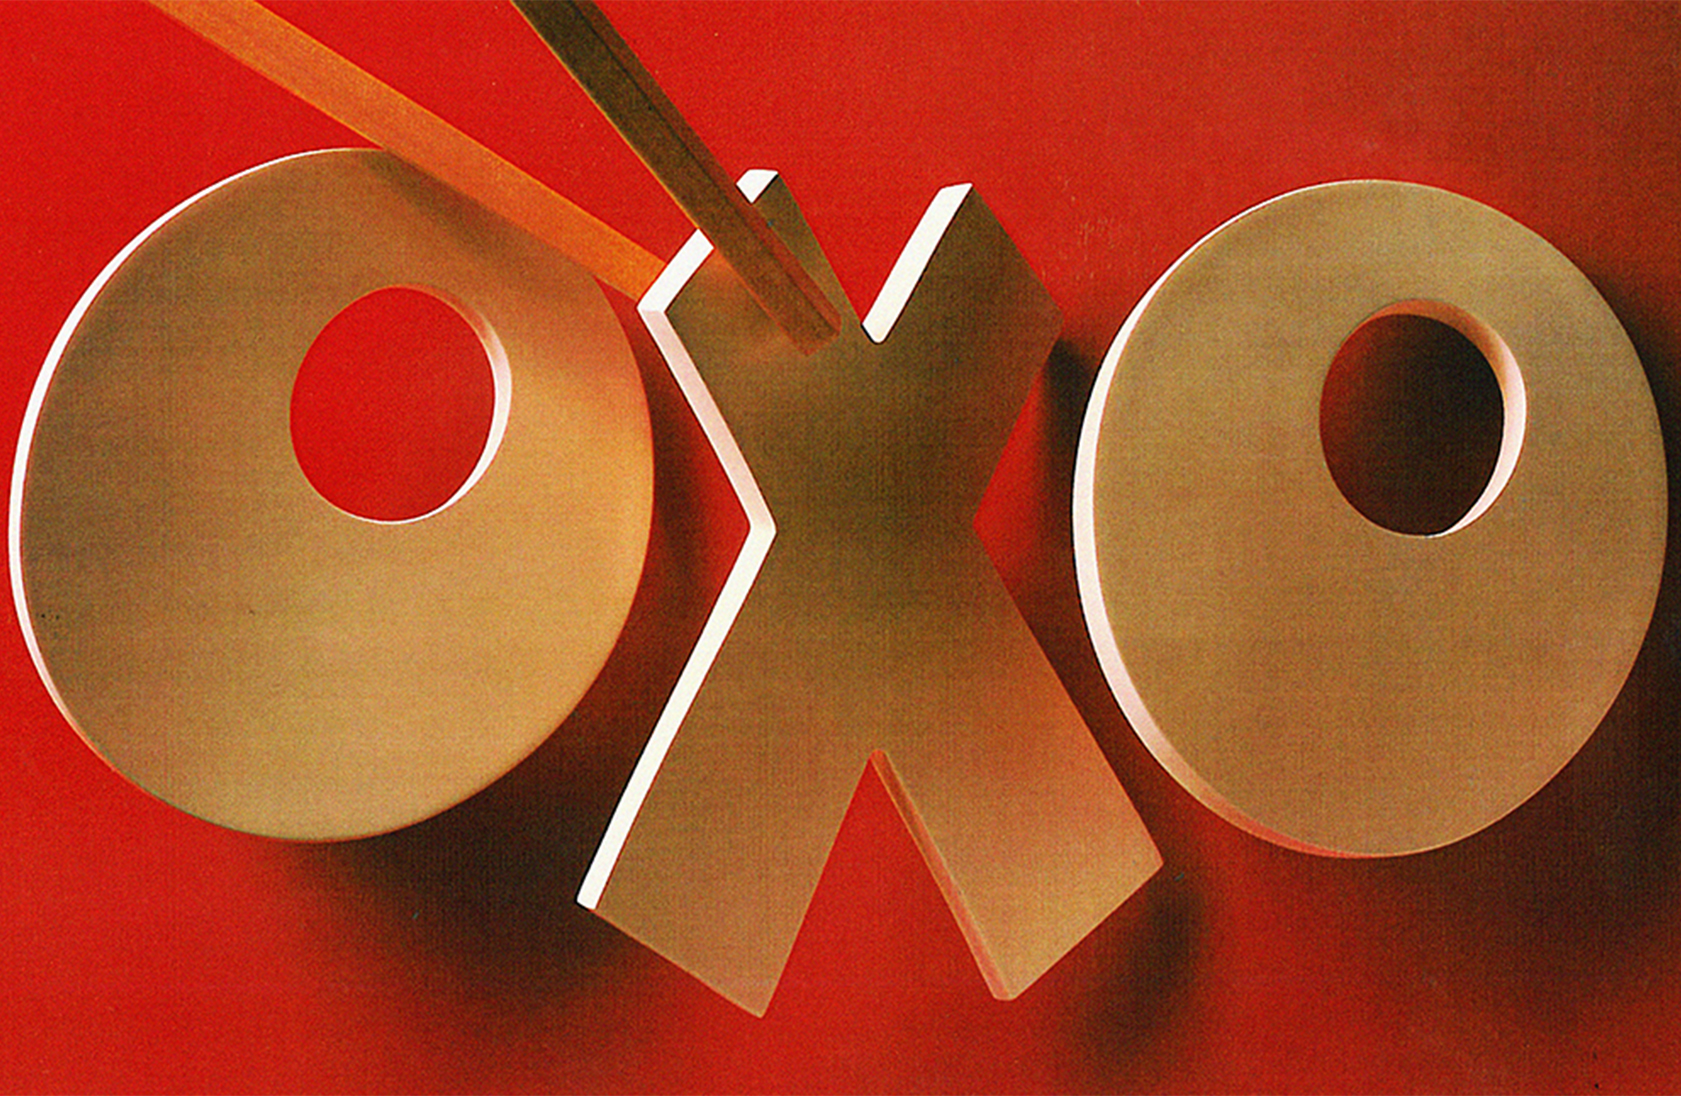 OXO | VISUALS